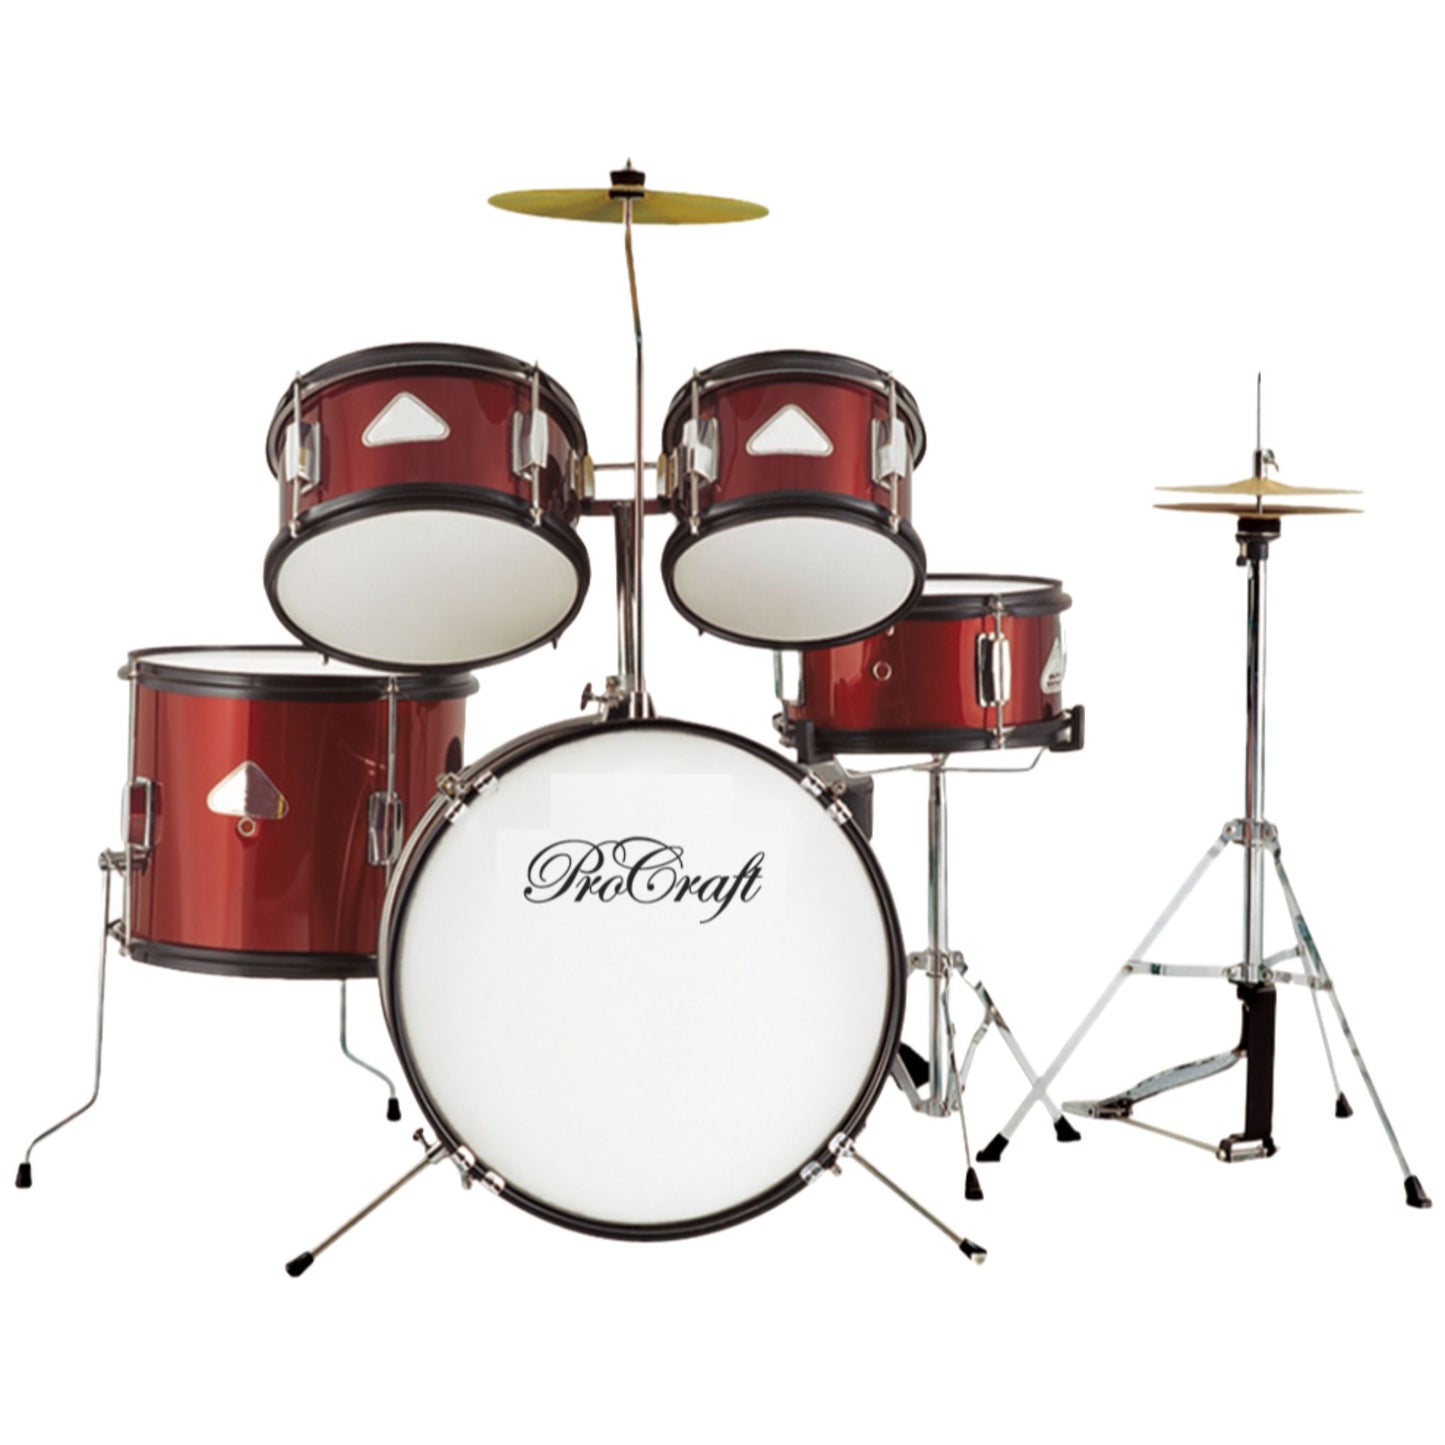 Procraft Junior Drum kit PRJ 1046